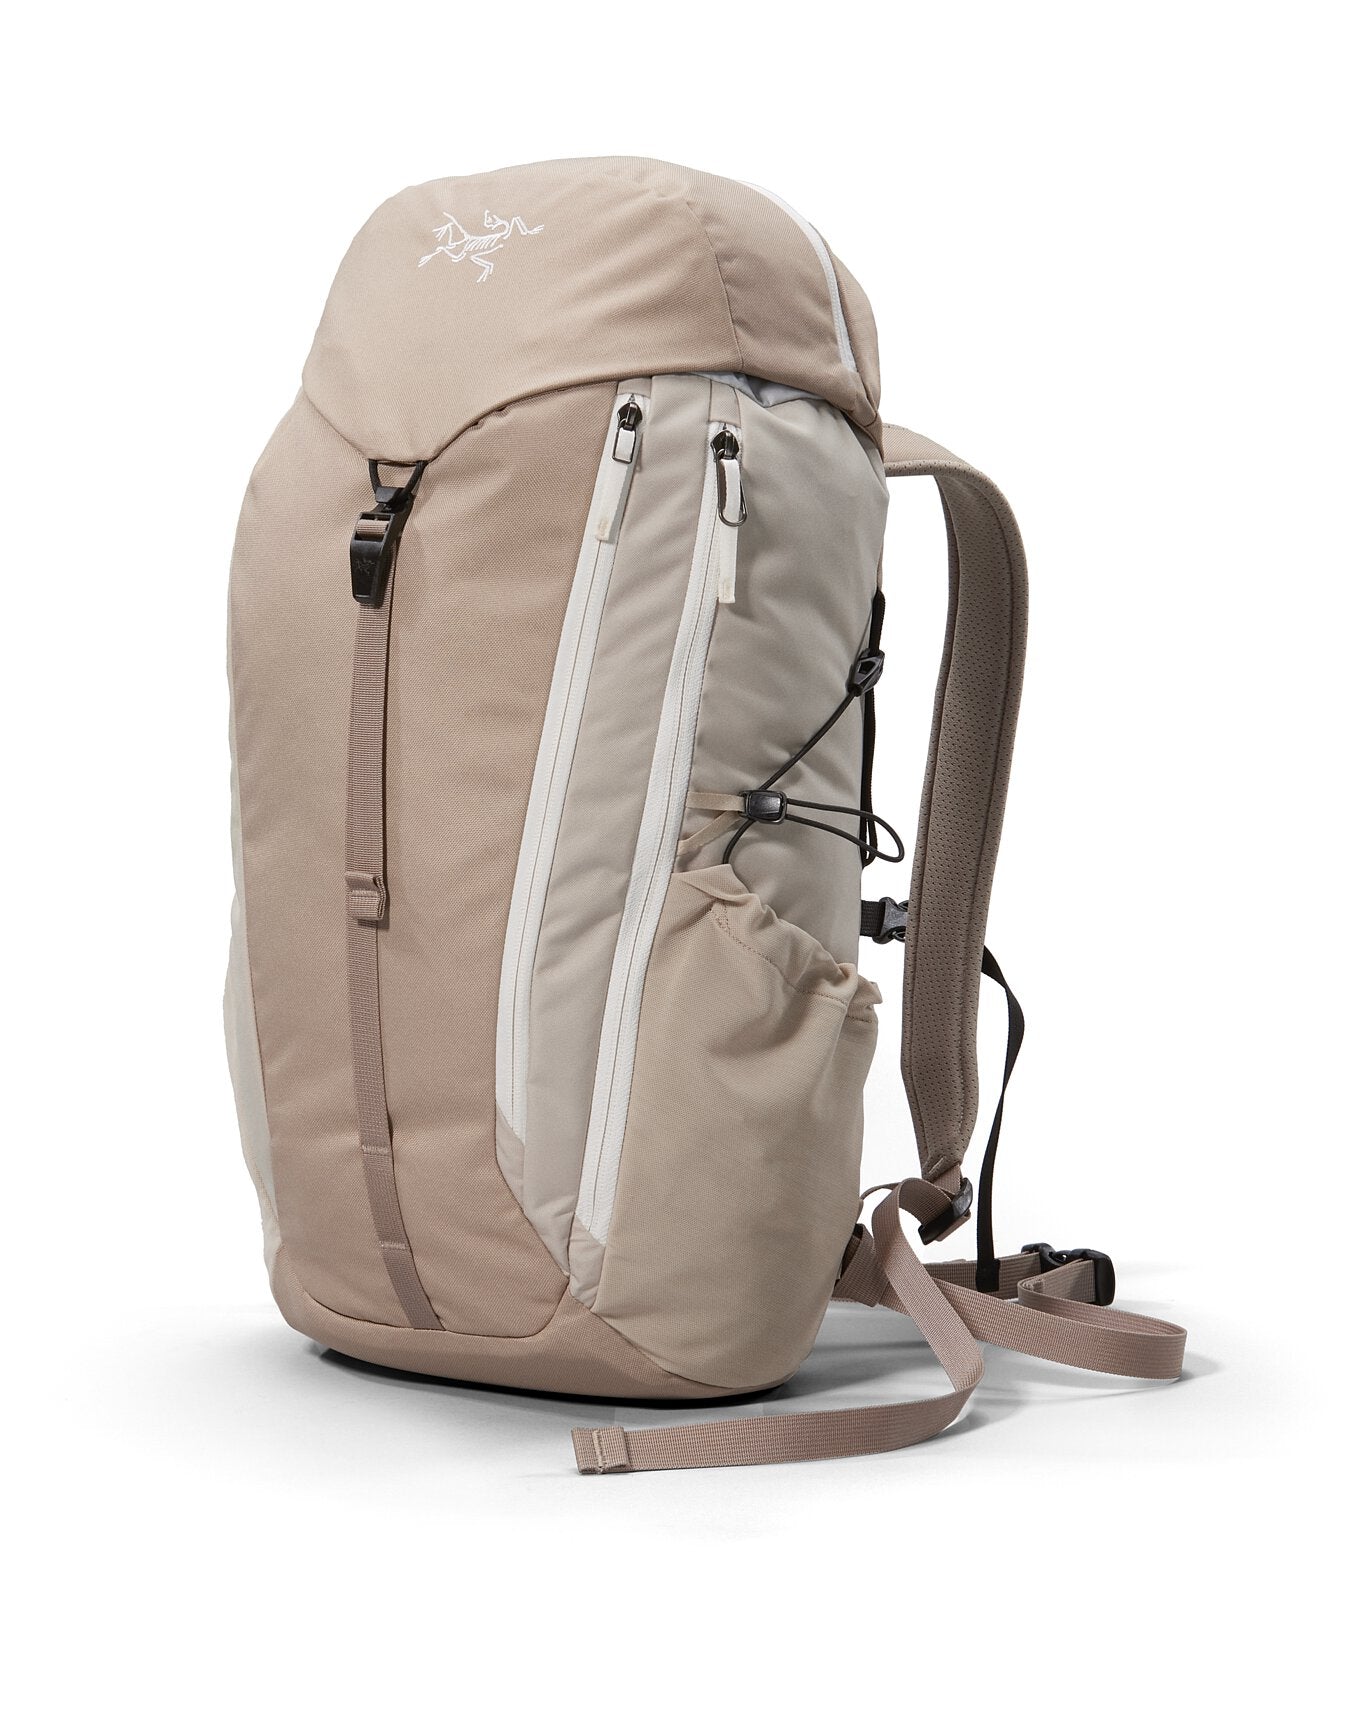 Mantis 20 Backpack